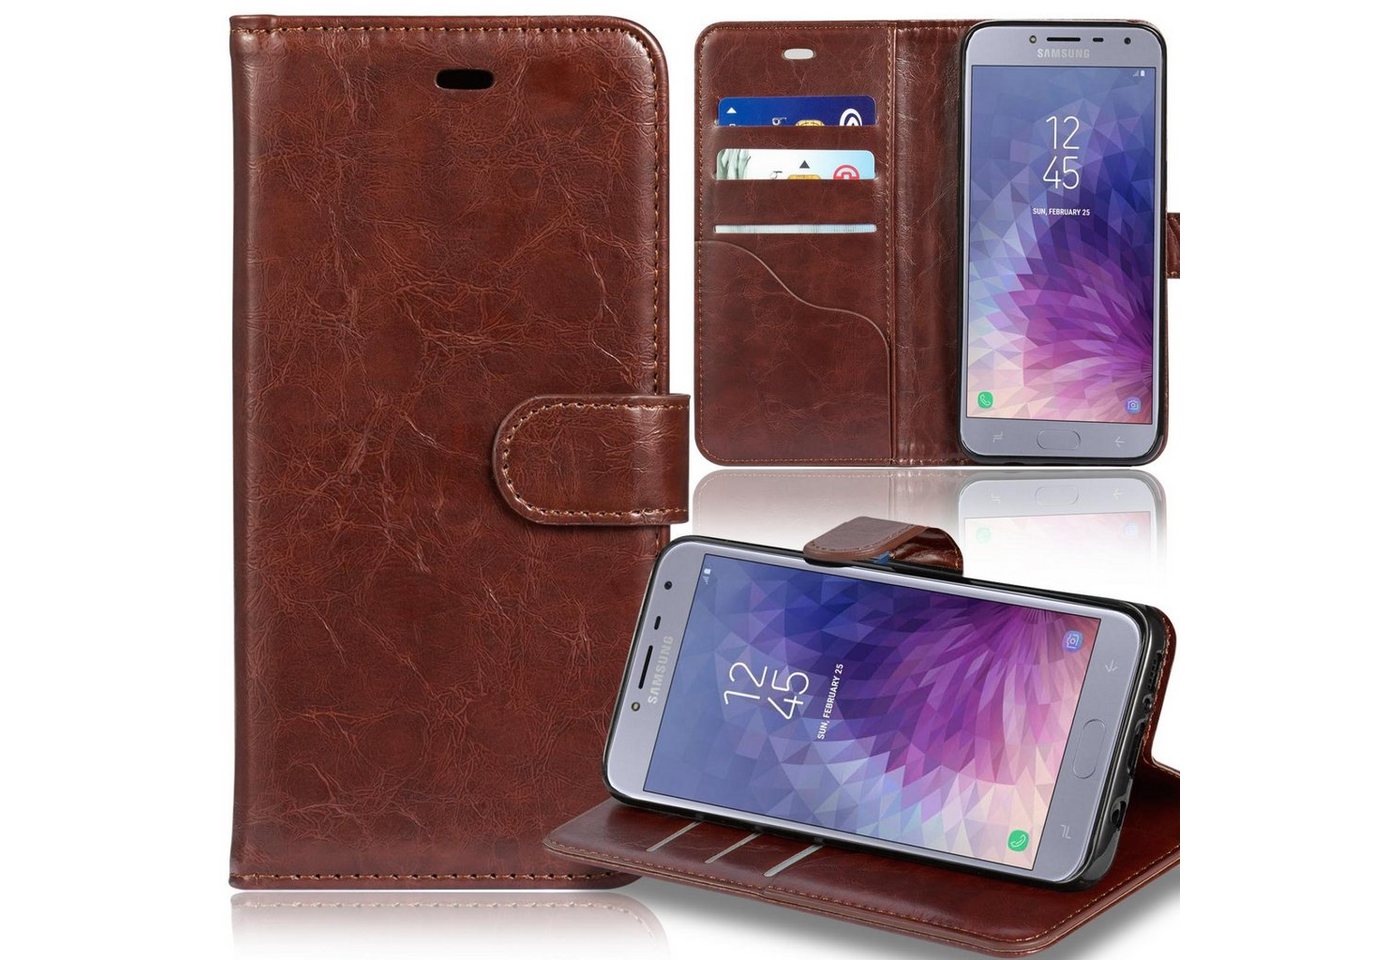 Numerva Smartphone-Hülle Bookstyle Wallet für Samsung Galaxy J4, Handy Tasche Schutz Hülle Etui Flip Cover von Numerva